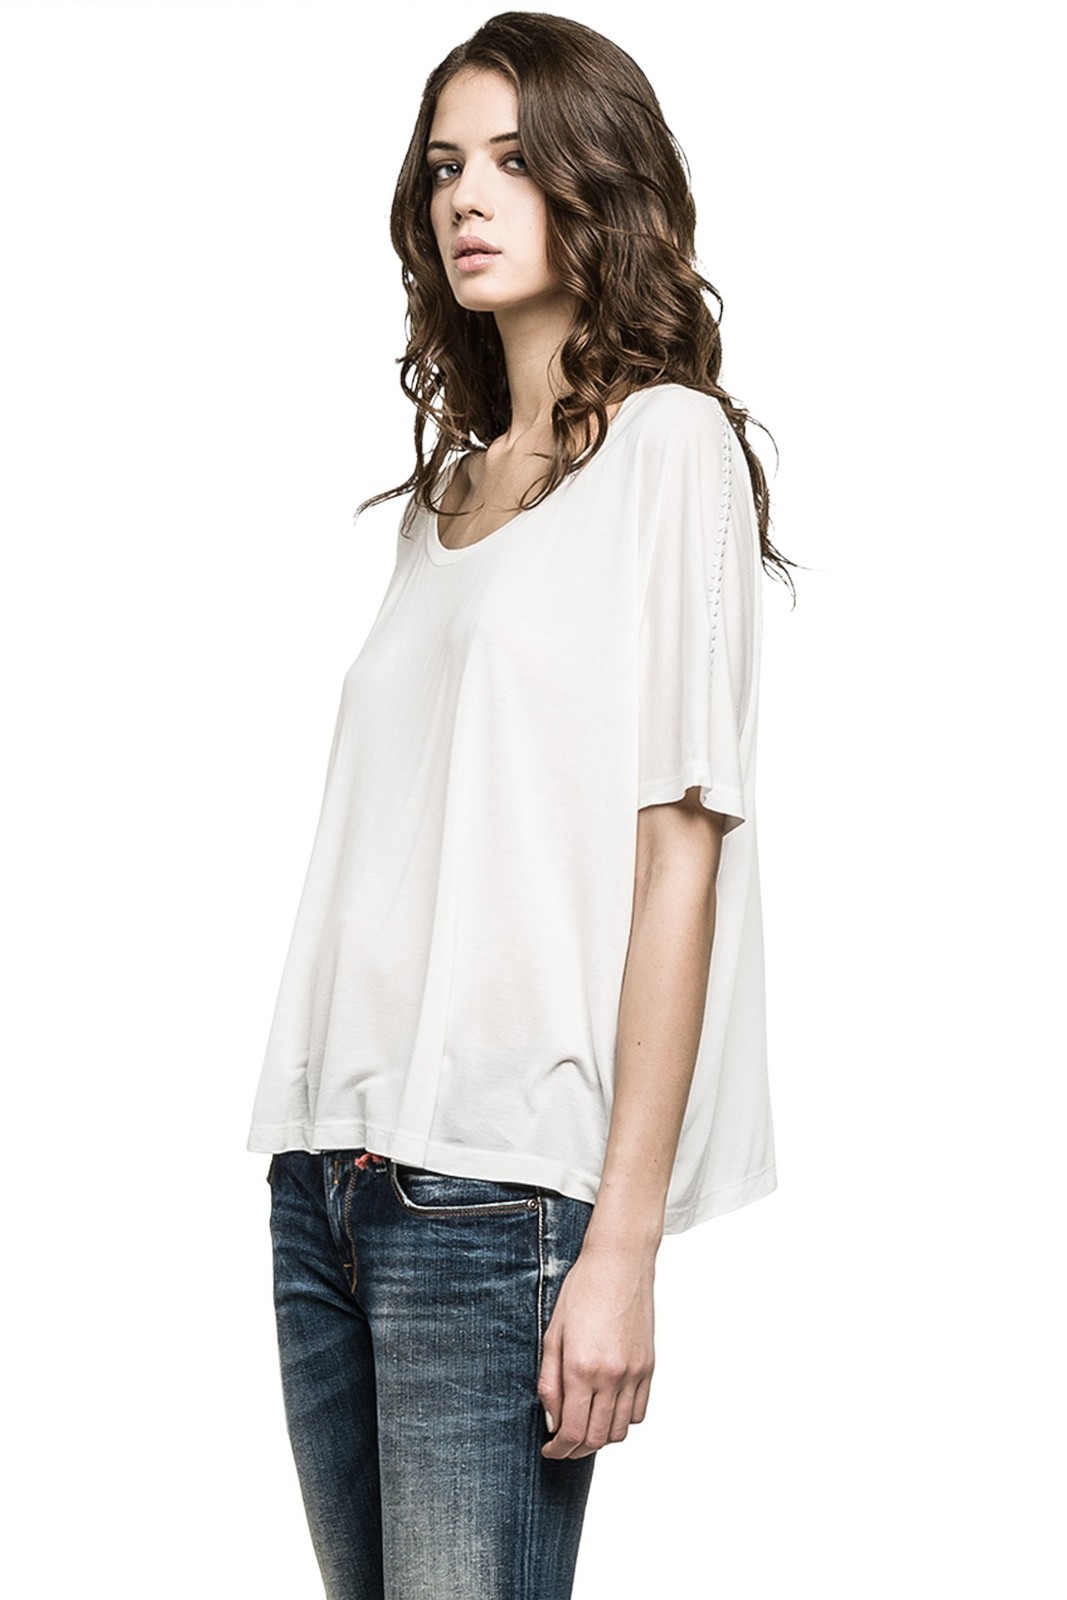 Replay női fehér dzsörzé túlméretezett póló 2015 fotója